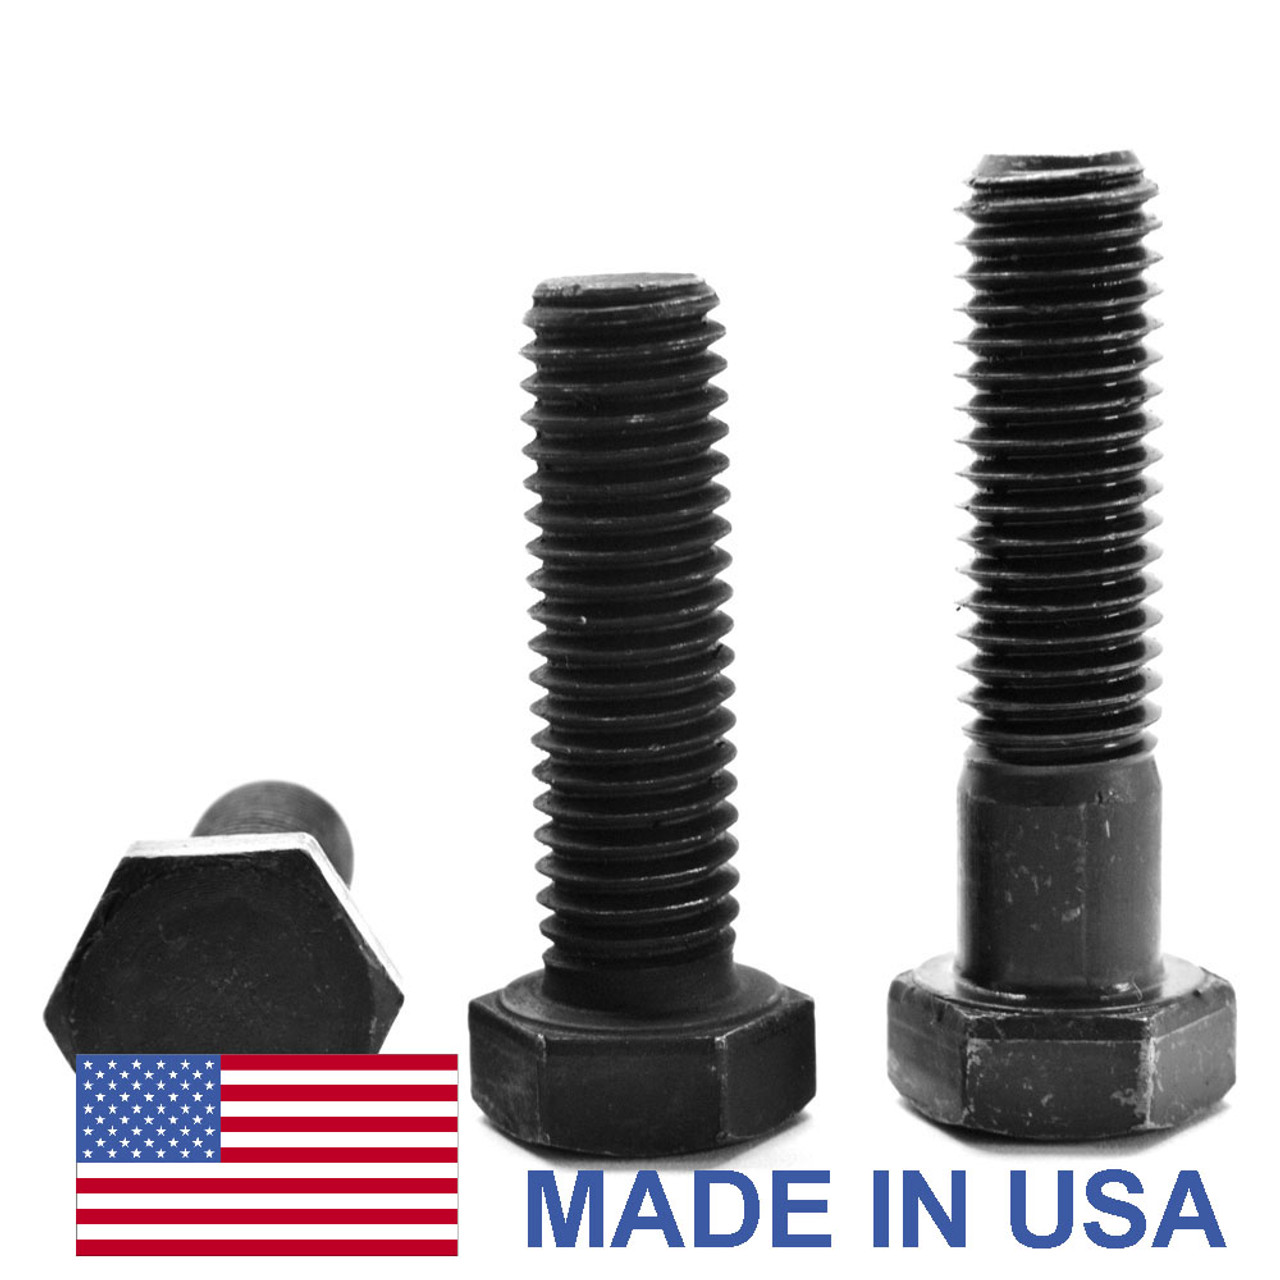 1"-14 x 9" (PT) UNS Thread Grade 5 Hex Cap Screw (Bolt) - USA Medium Carbon Steel Black Oxide